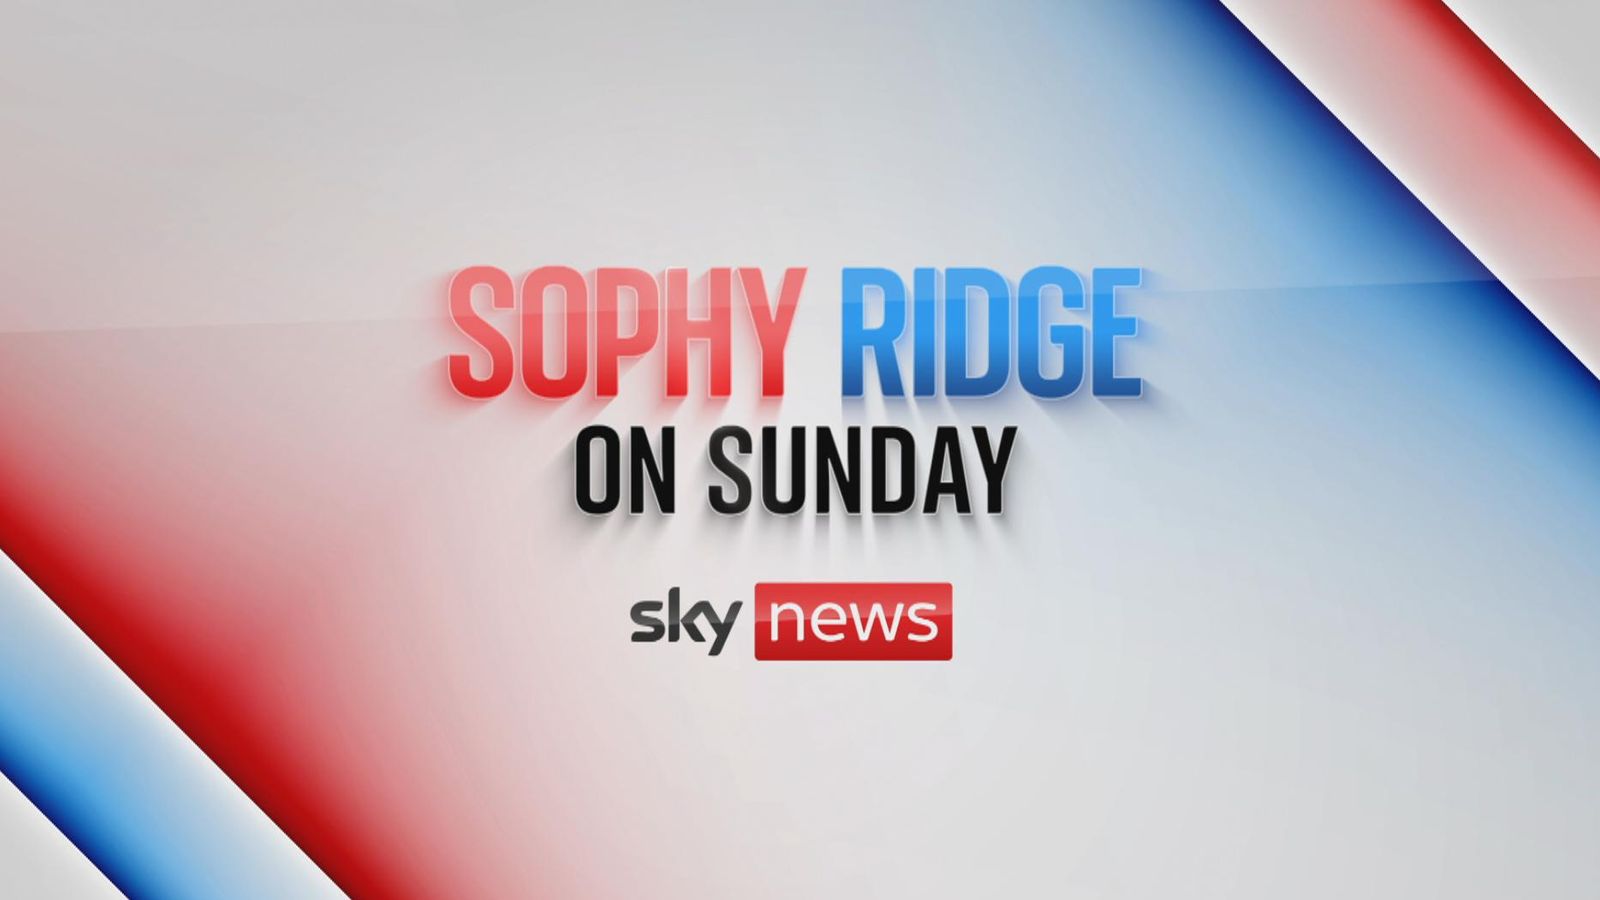 skynews-sophy-ridge-on-sunday_5917200.jpg